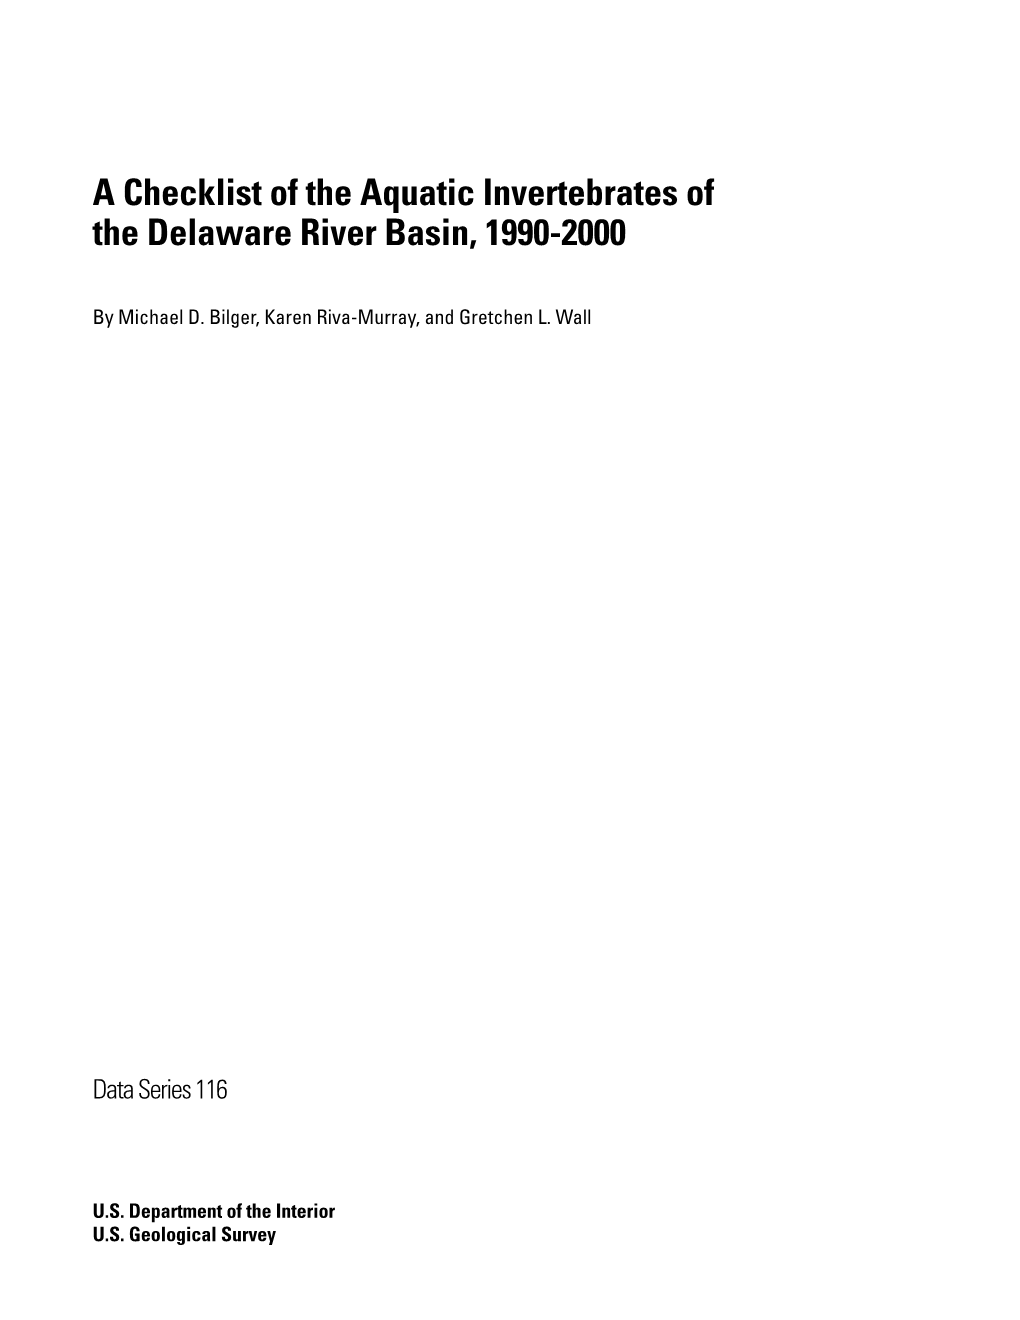 A Checklist of the Aquatic Invertebrates of the Delaware River Basin, 1990-2000